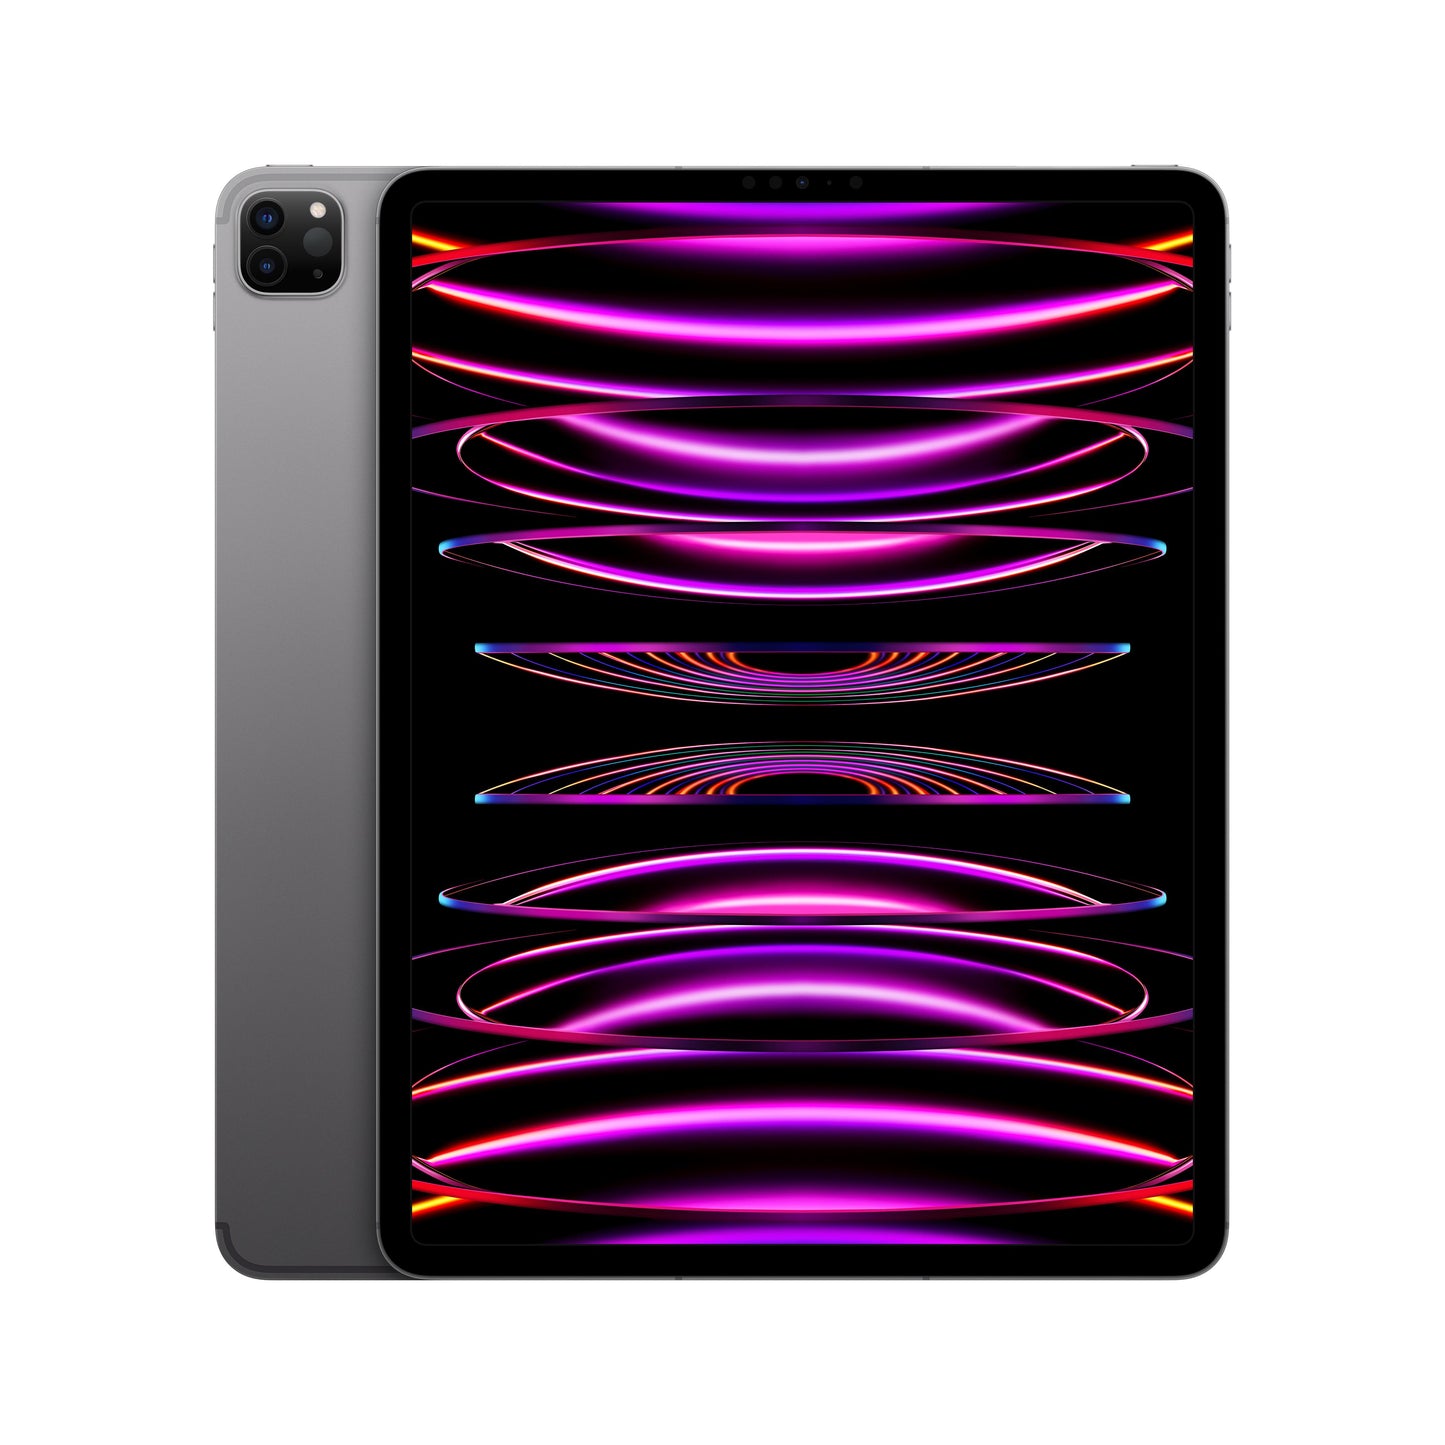 2022 12.9-inch iPad Pro Wi-Fi + Cellular 256GB - Space Grey (6th generation)